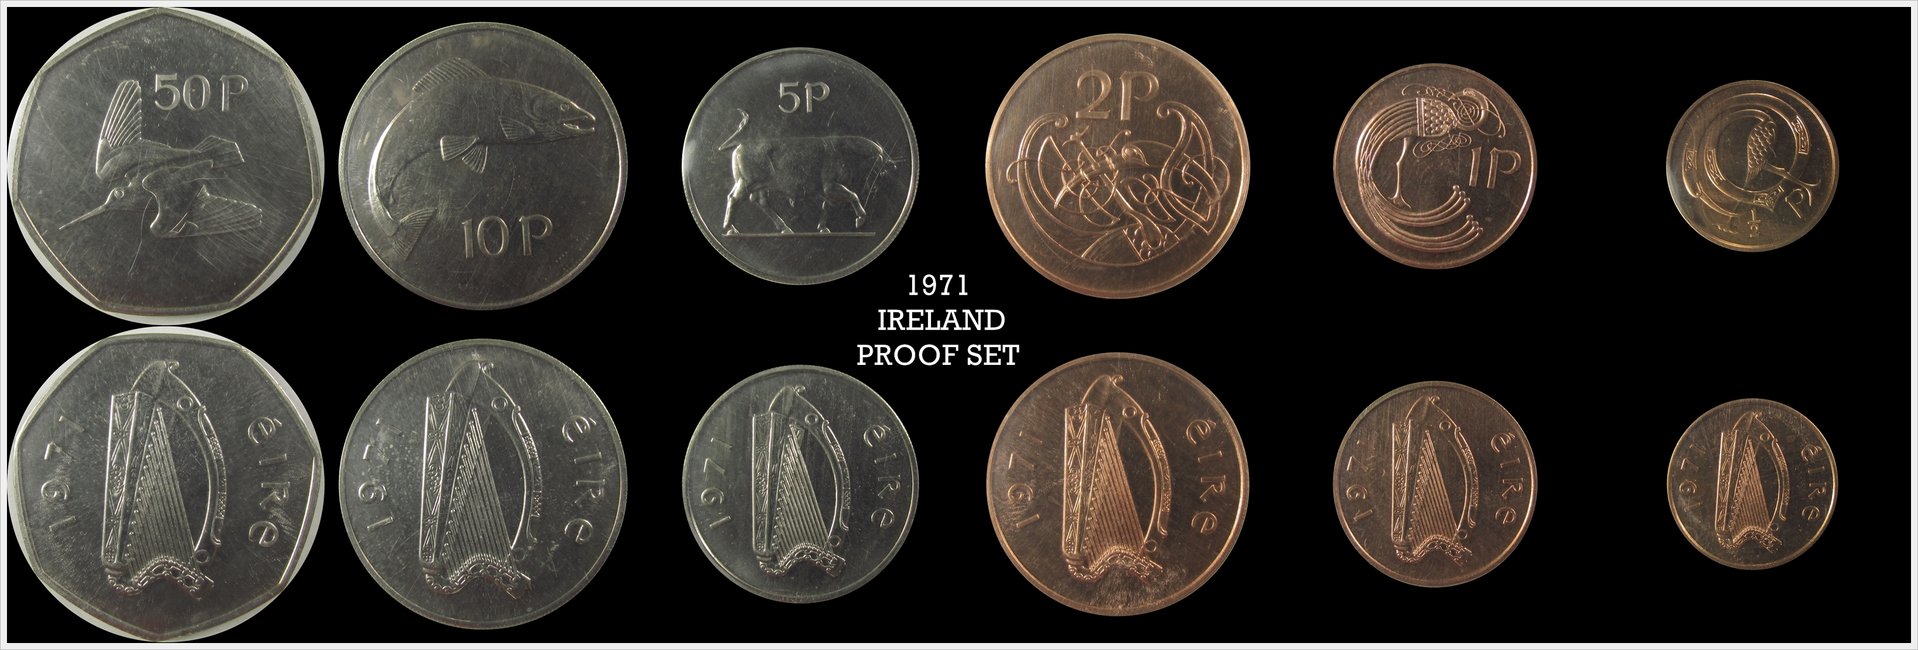 1971 Ireland Proof set.jpg